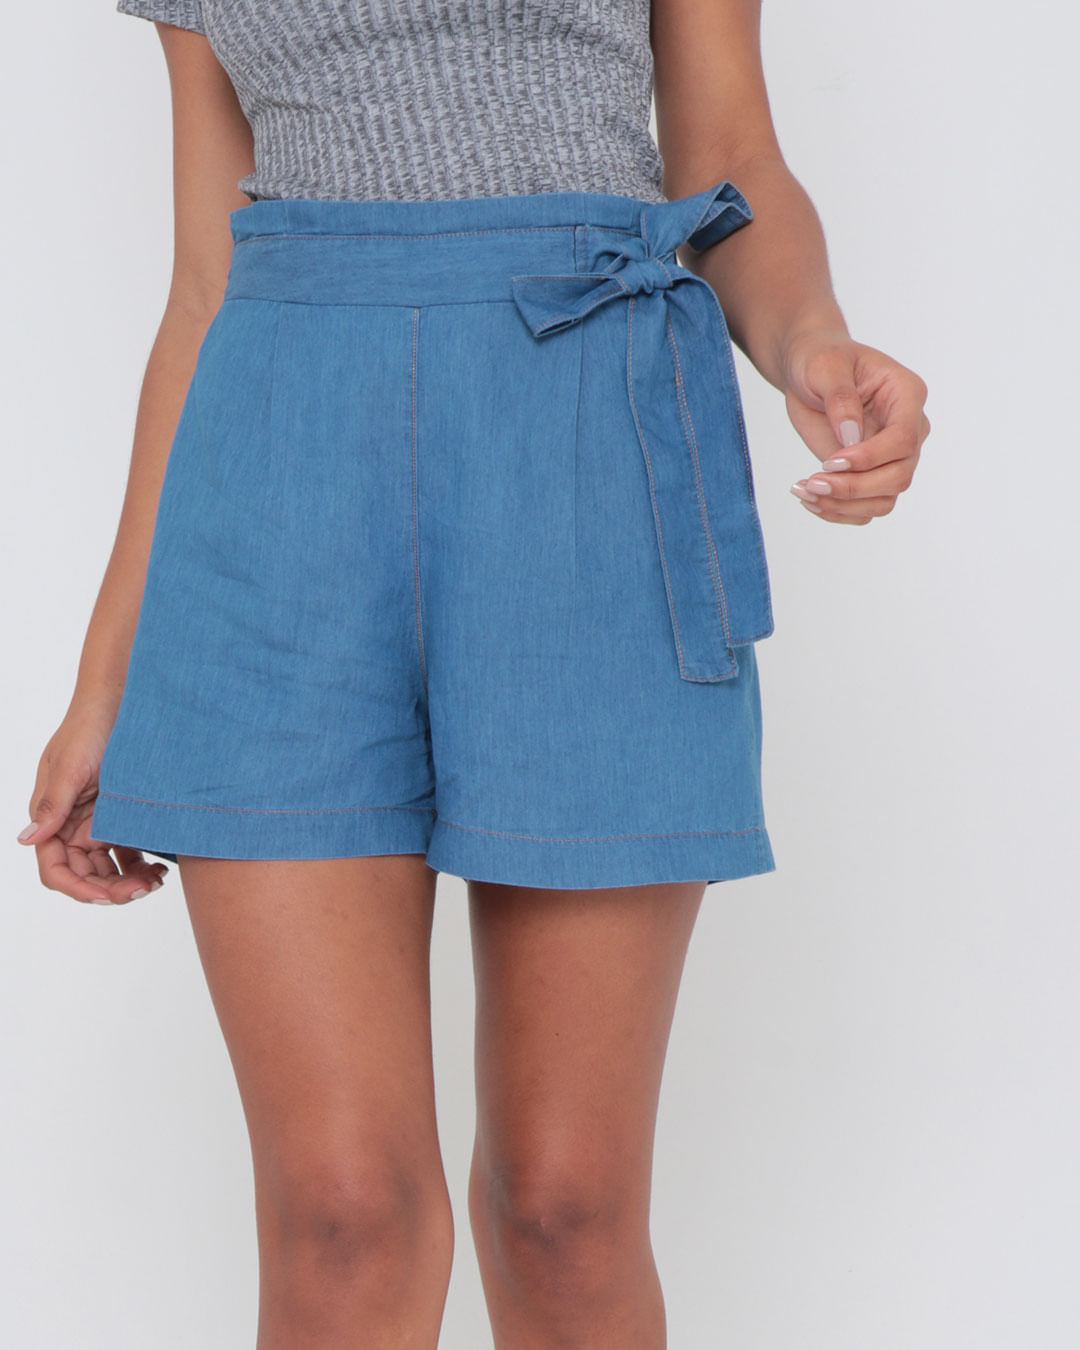 Short-Jeans-Feminino-Com-Babado-Azul-